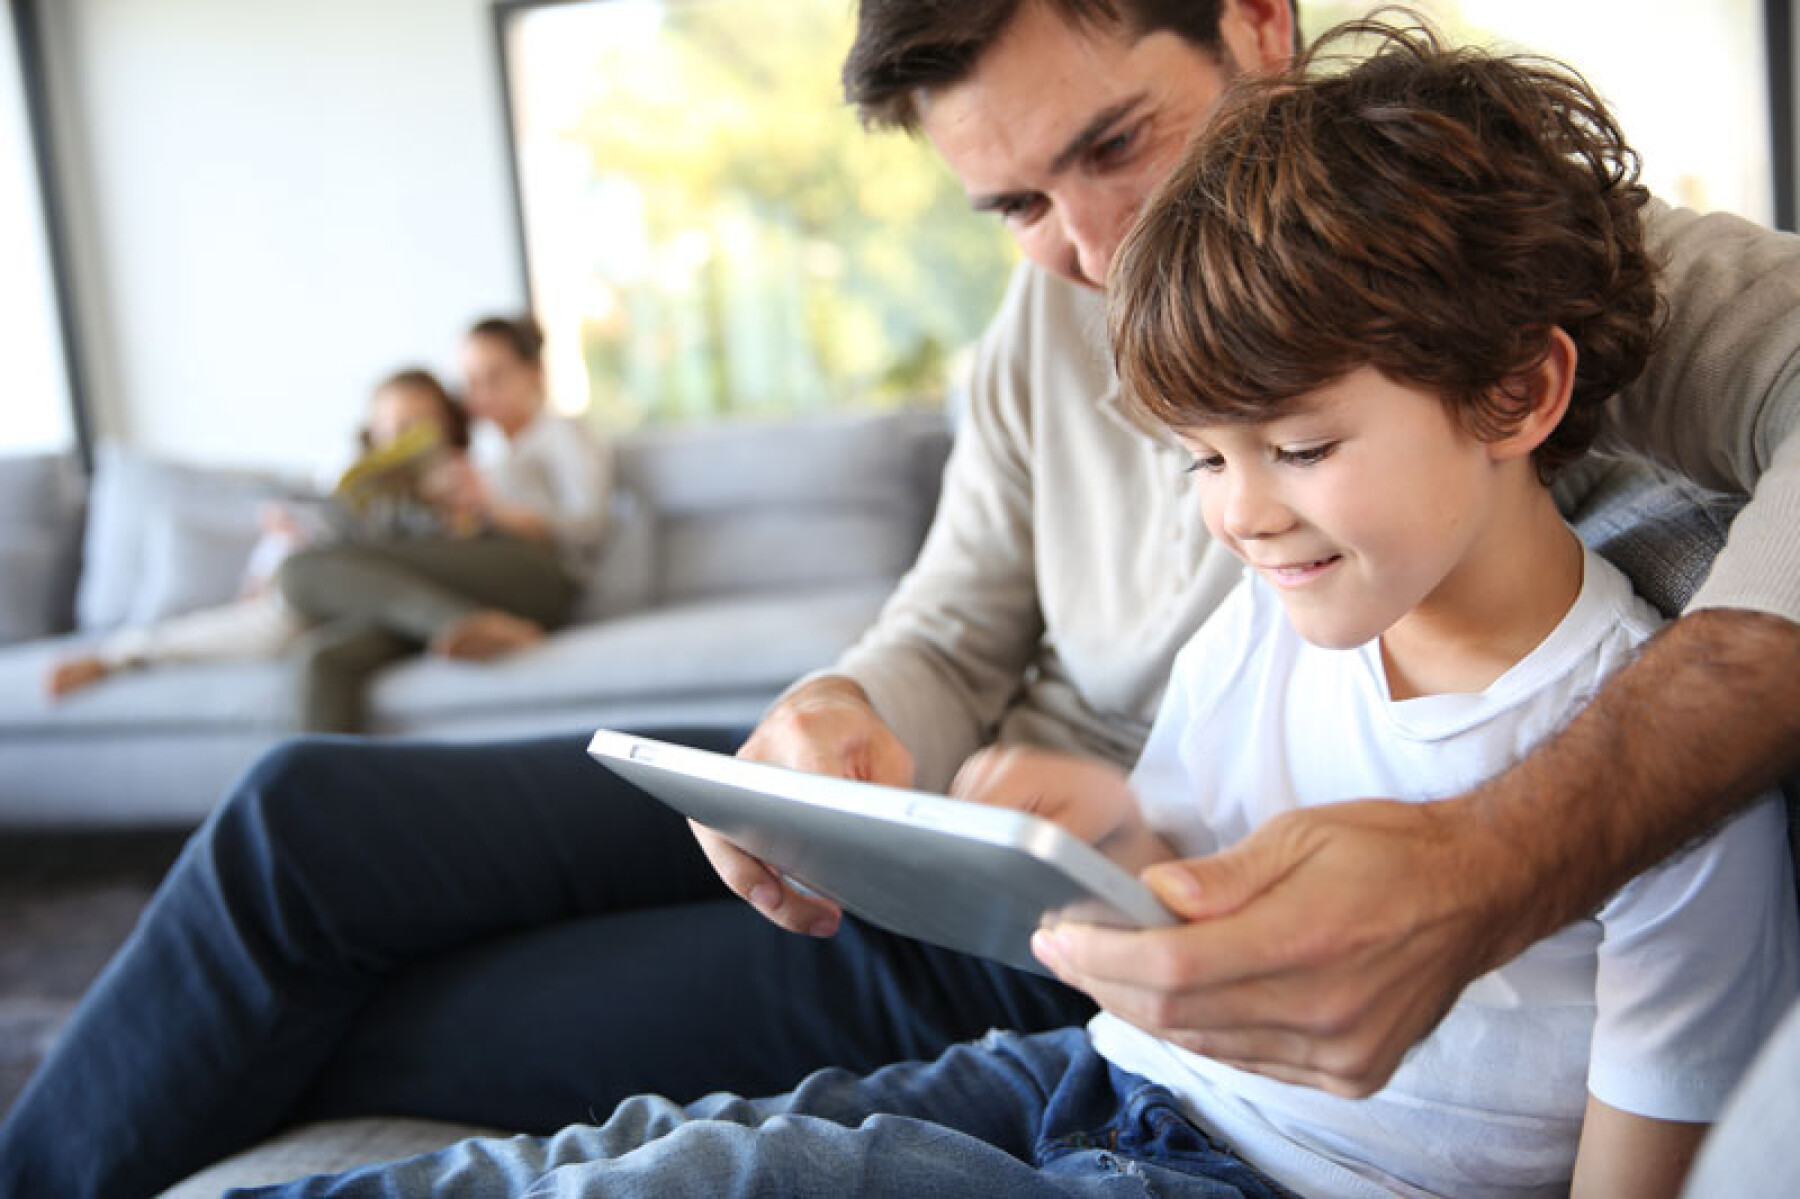 TCHAT - Temps d’écran, âge, règles familiales : comment gérer les écrans de nos enfants ? Appel à questions